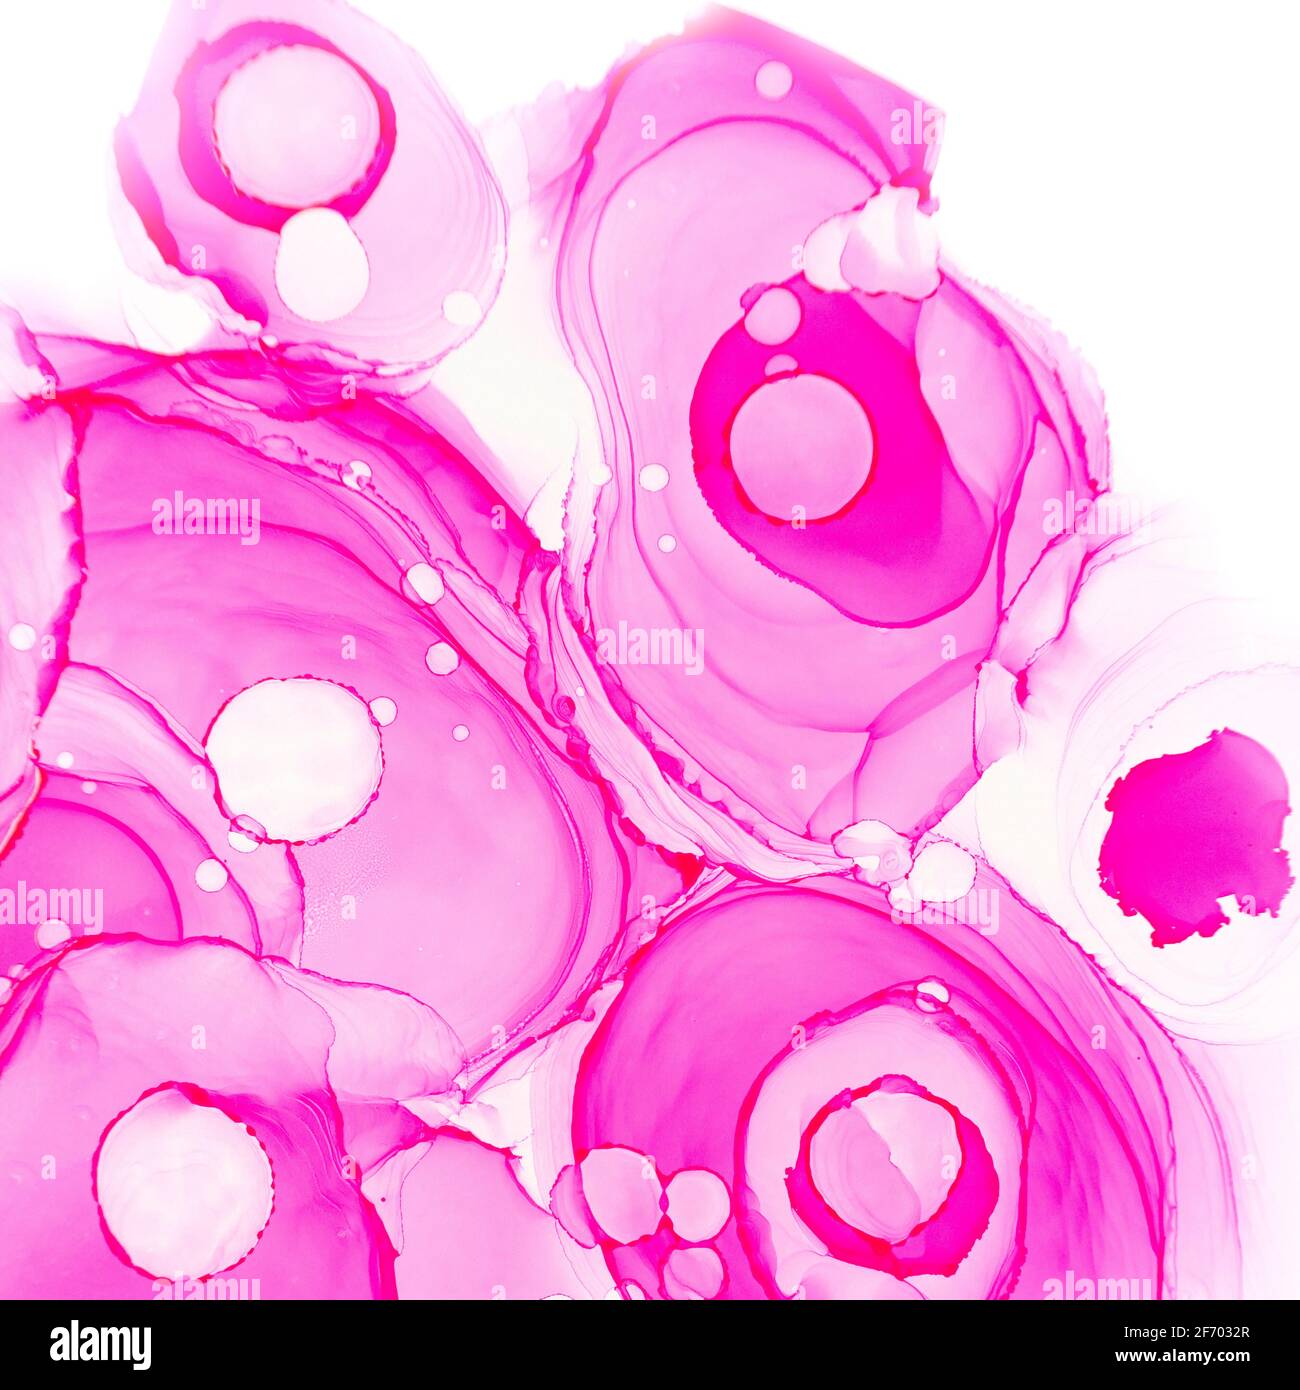 Alkohol Tinte Rosen Textur. Rosa Neon abstrakter Hintergrund mit Blumen. Abstrakt durchscheinender Blumenfluss. Modernes Design mit fluidkarmesinroten Pfingstrosen Stockfoto